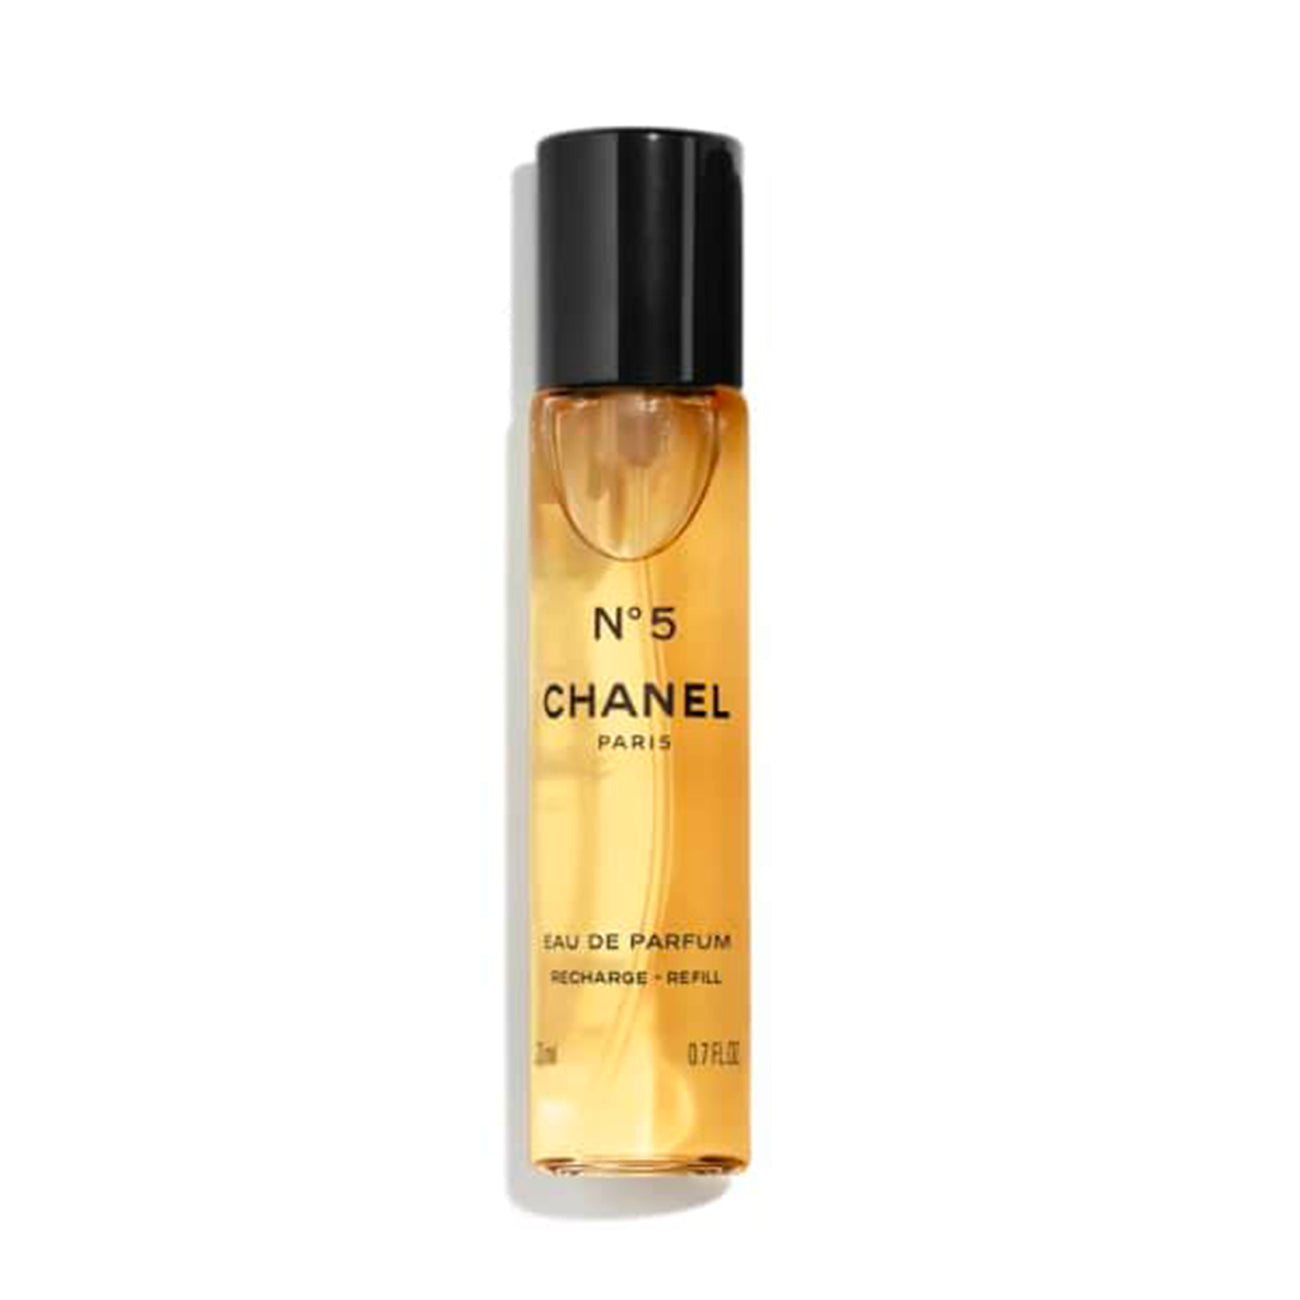 Chanel N5 - Eau de Parfum (refill)